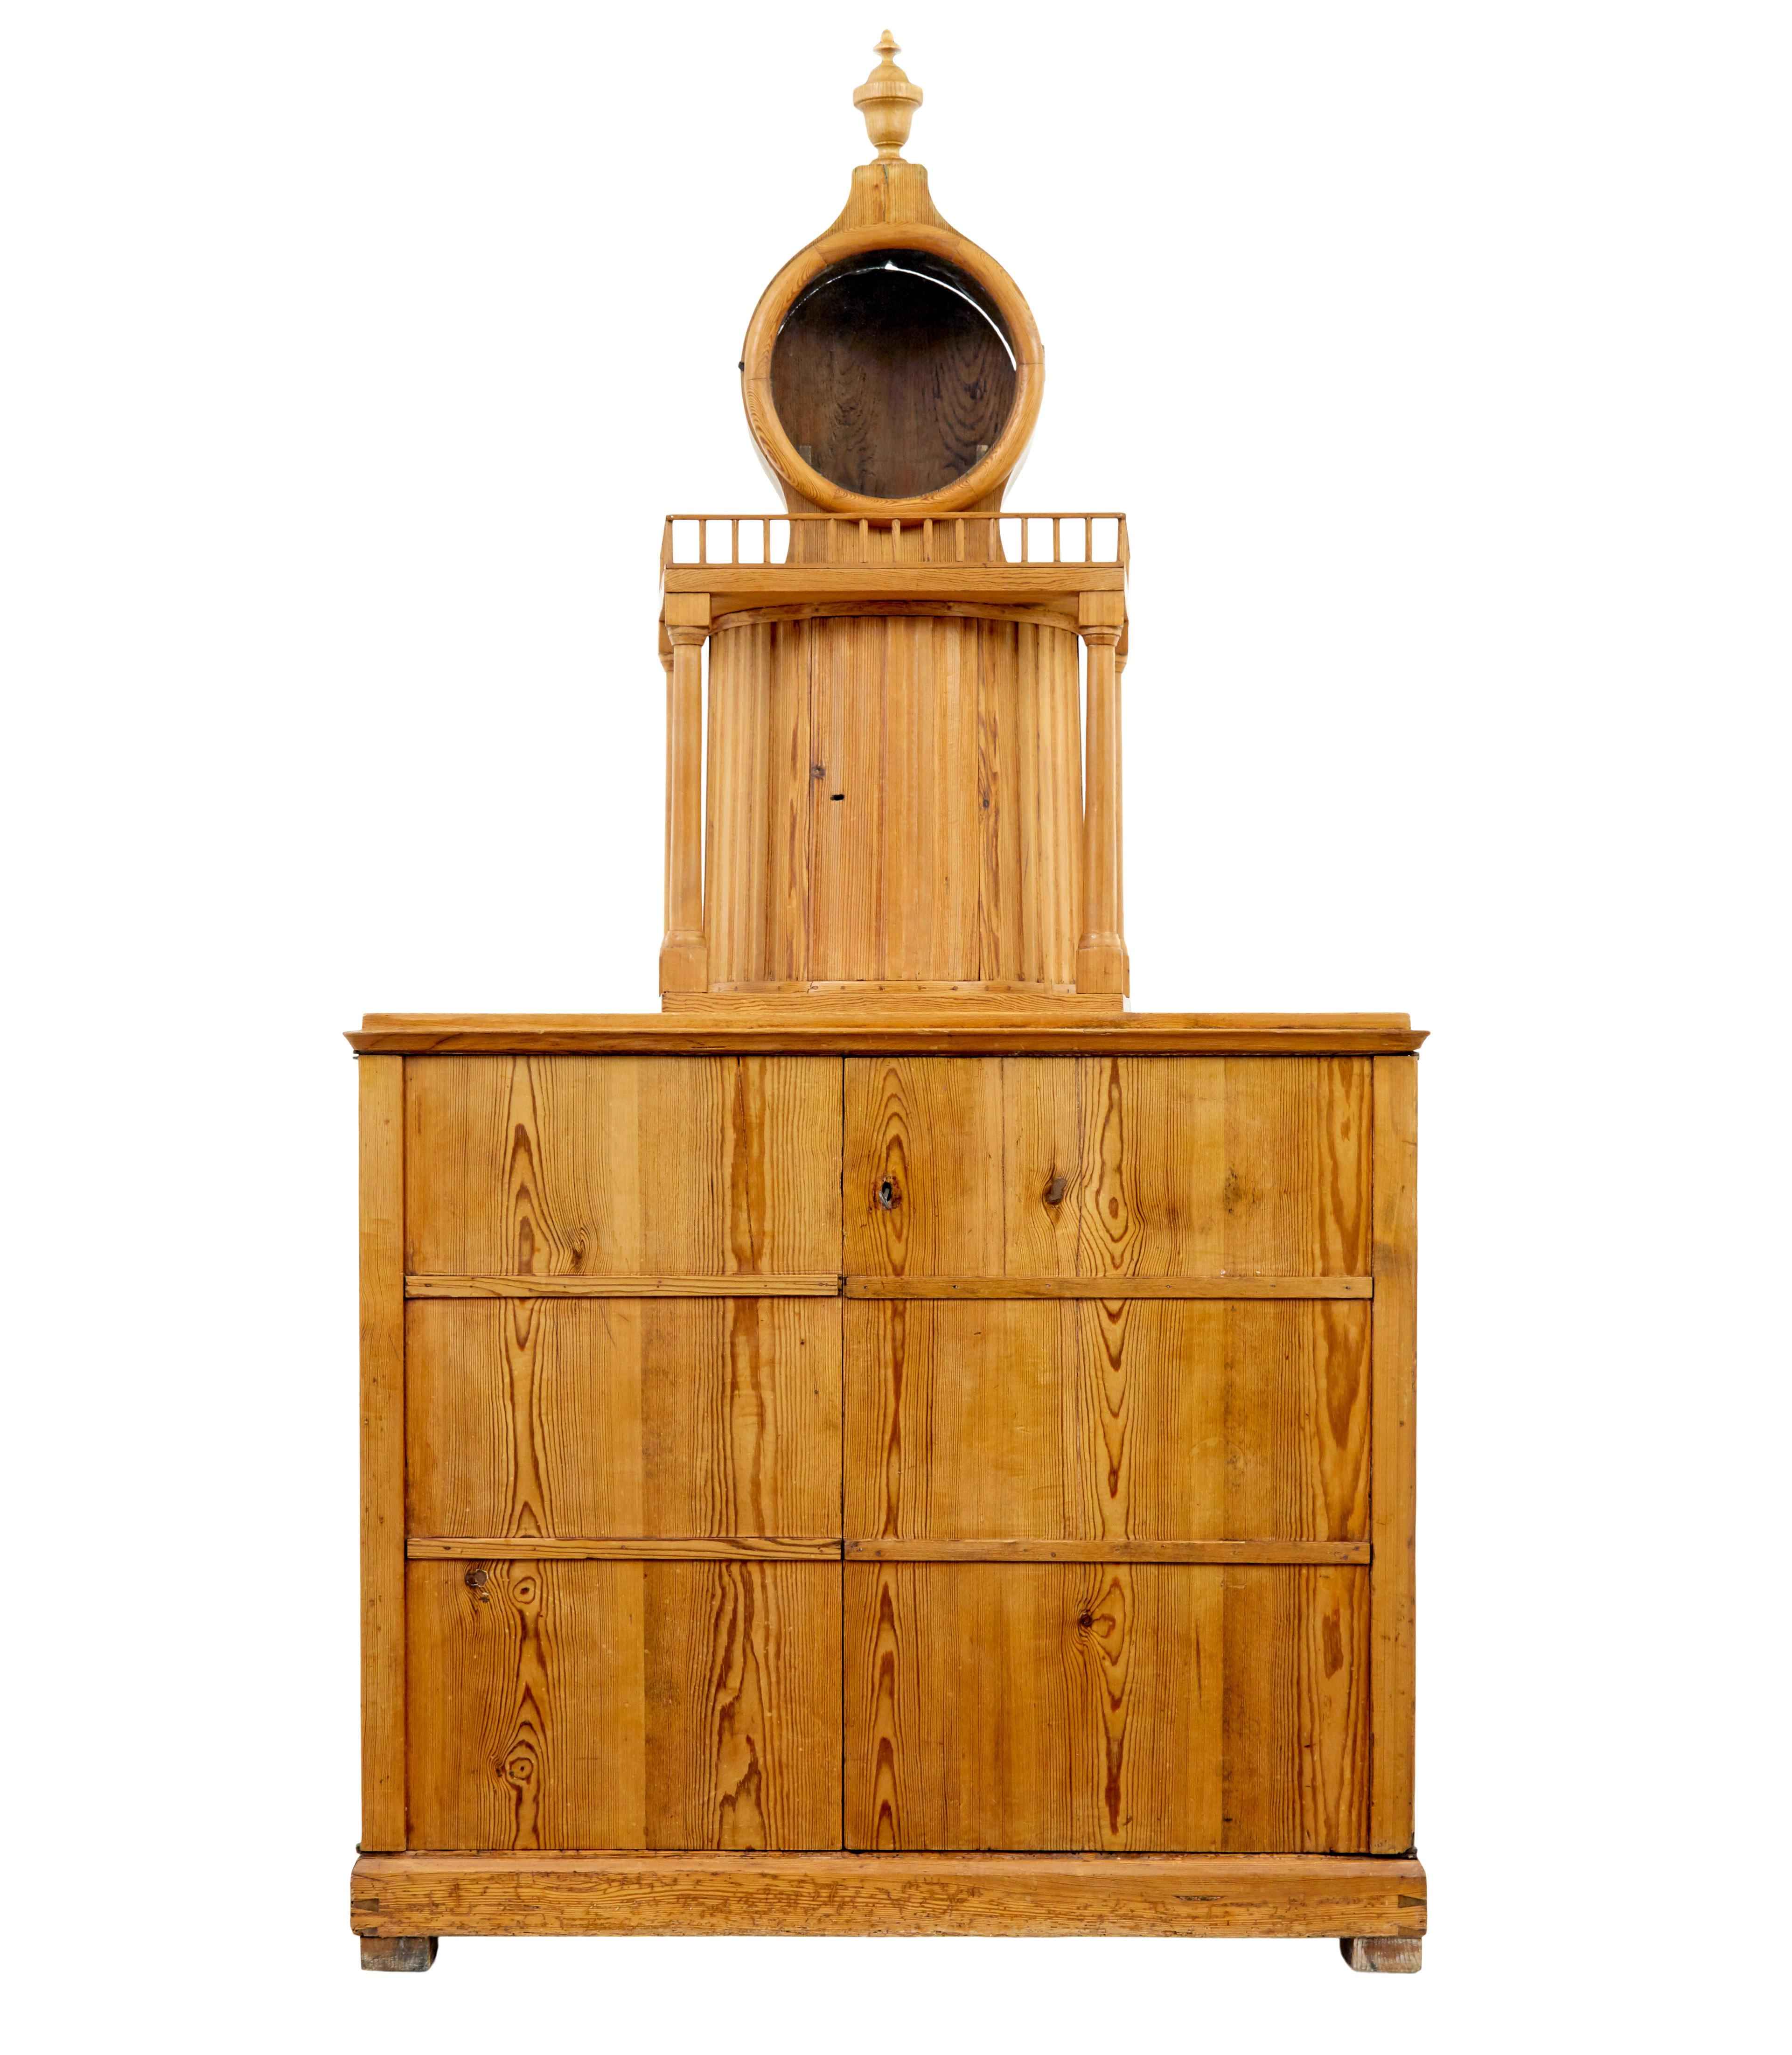 Armoire de cuisine en pin suédois du XIXe siècle, vers 1880.

Rare armoire suédoise en pin présentant une tour d'horloge sur la surface supérieure.   Monture d'horloge avec capuchon amovible, les chaînes, les poids et le pendule pendaient le long du